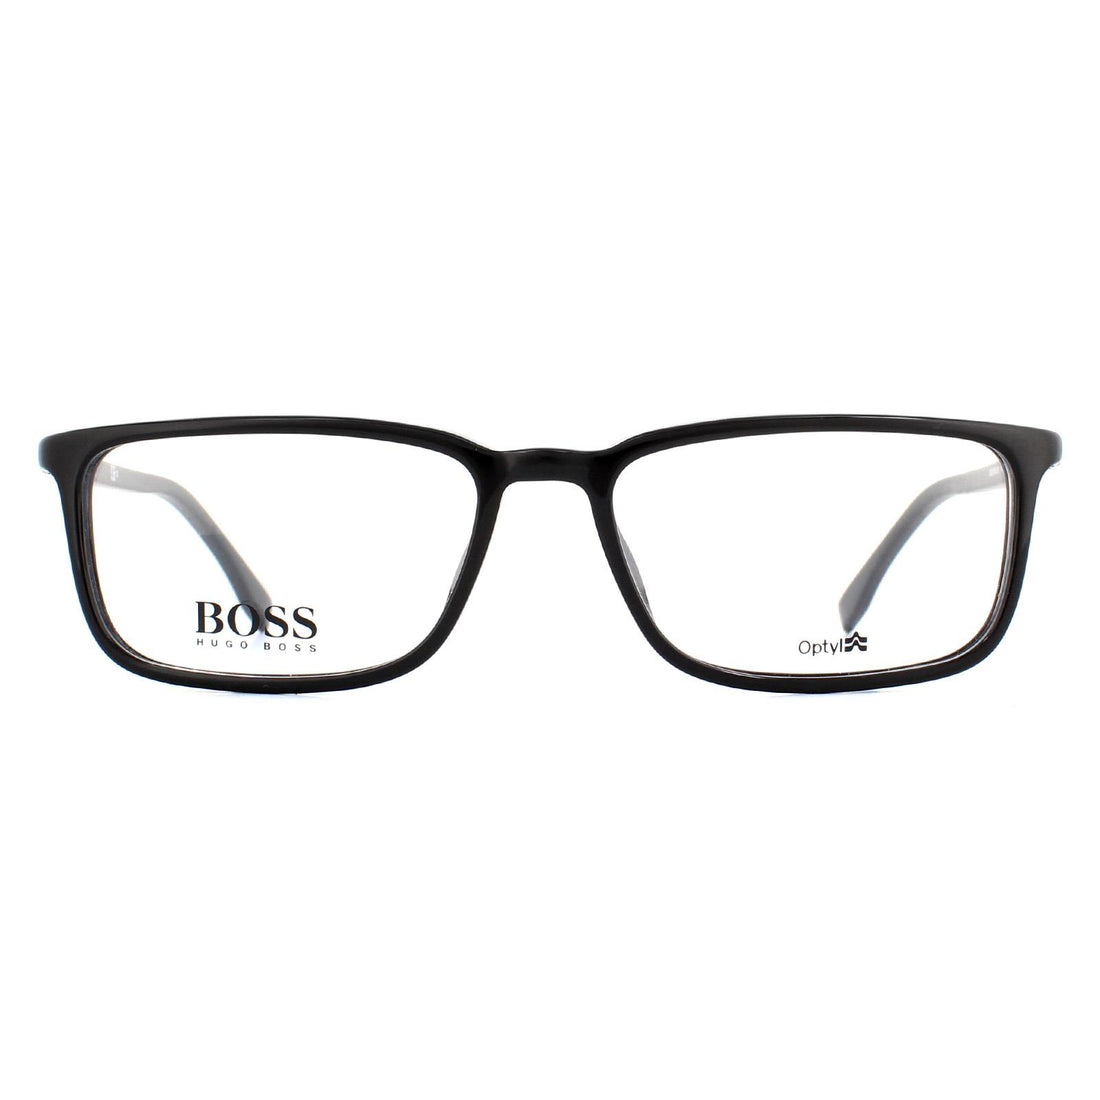 Hugo Boss BOSS 0963 Glasses Frames Black